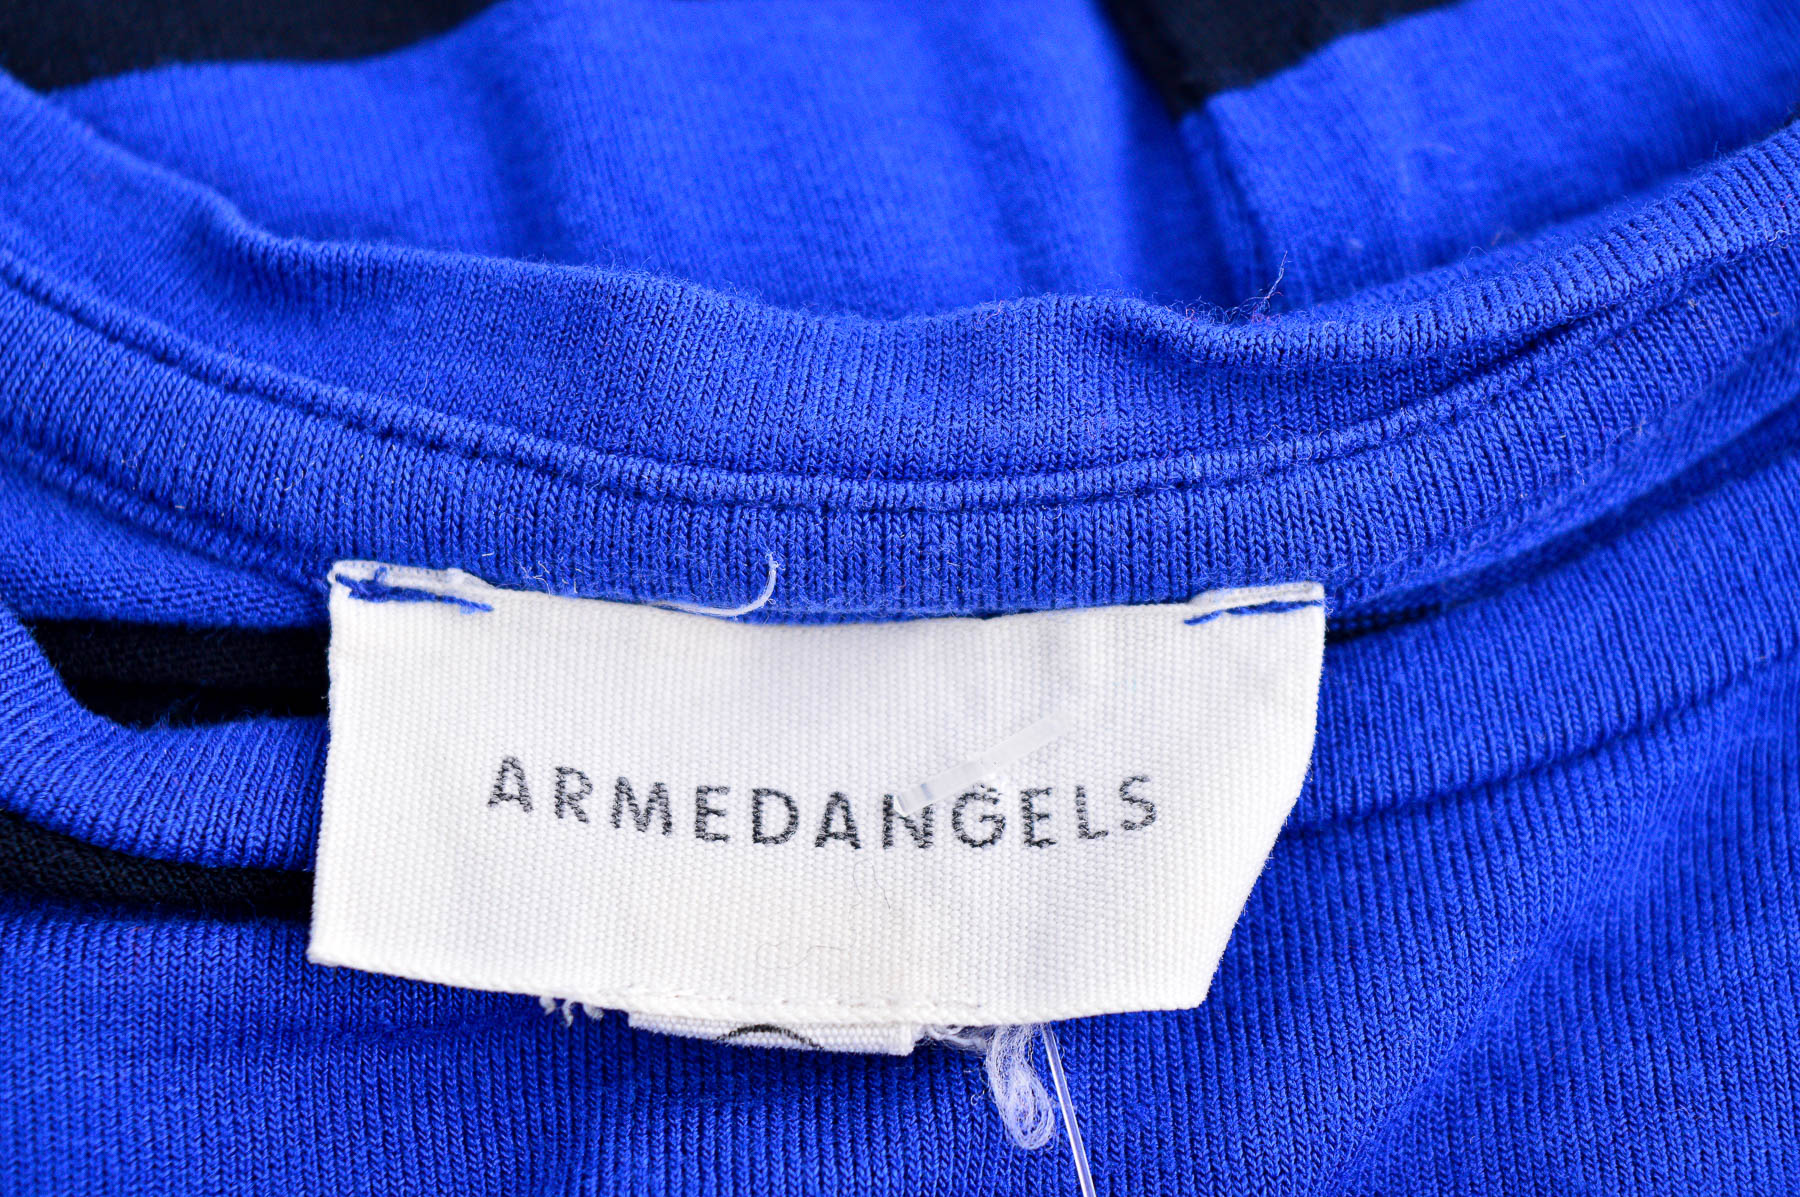 Dress - Armedangels - 2